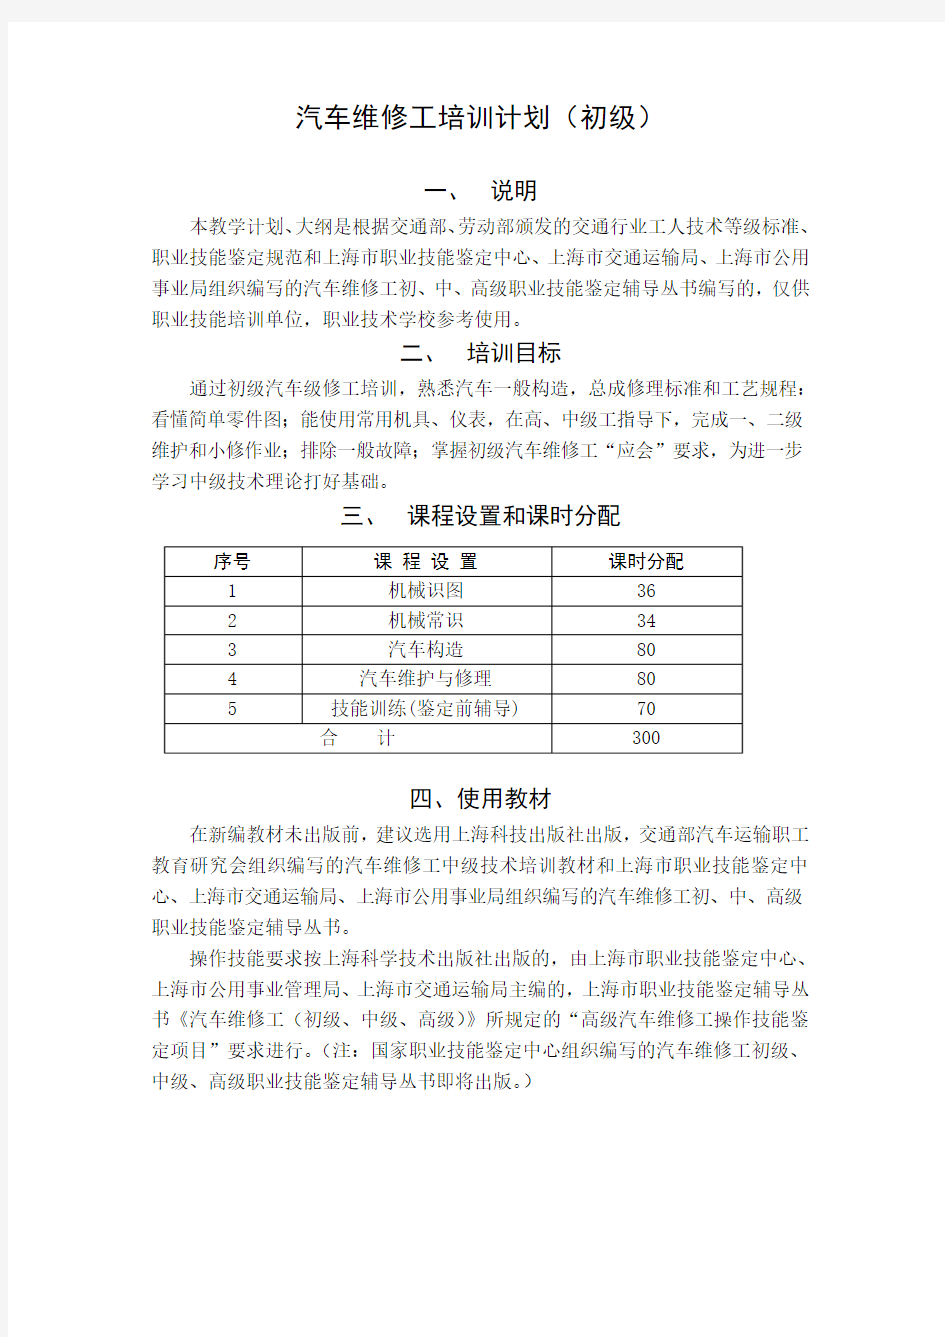 汽车维修工培训计划(初级) - 上海市人力资源社会保障网